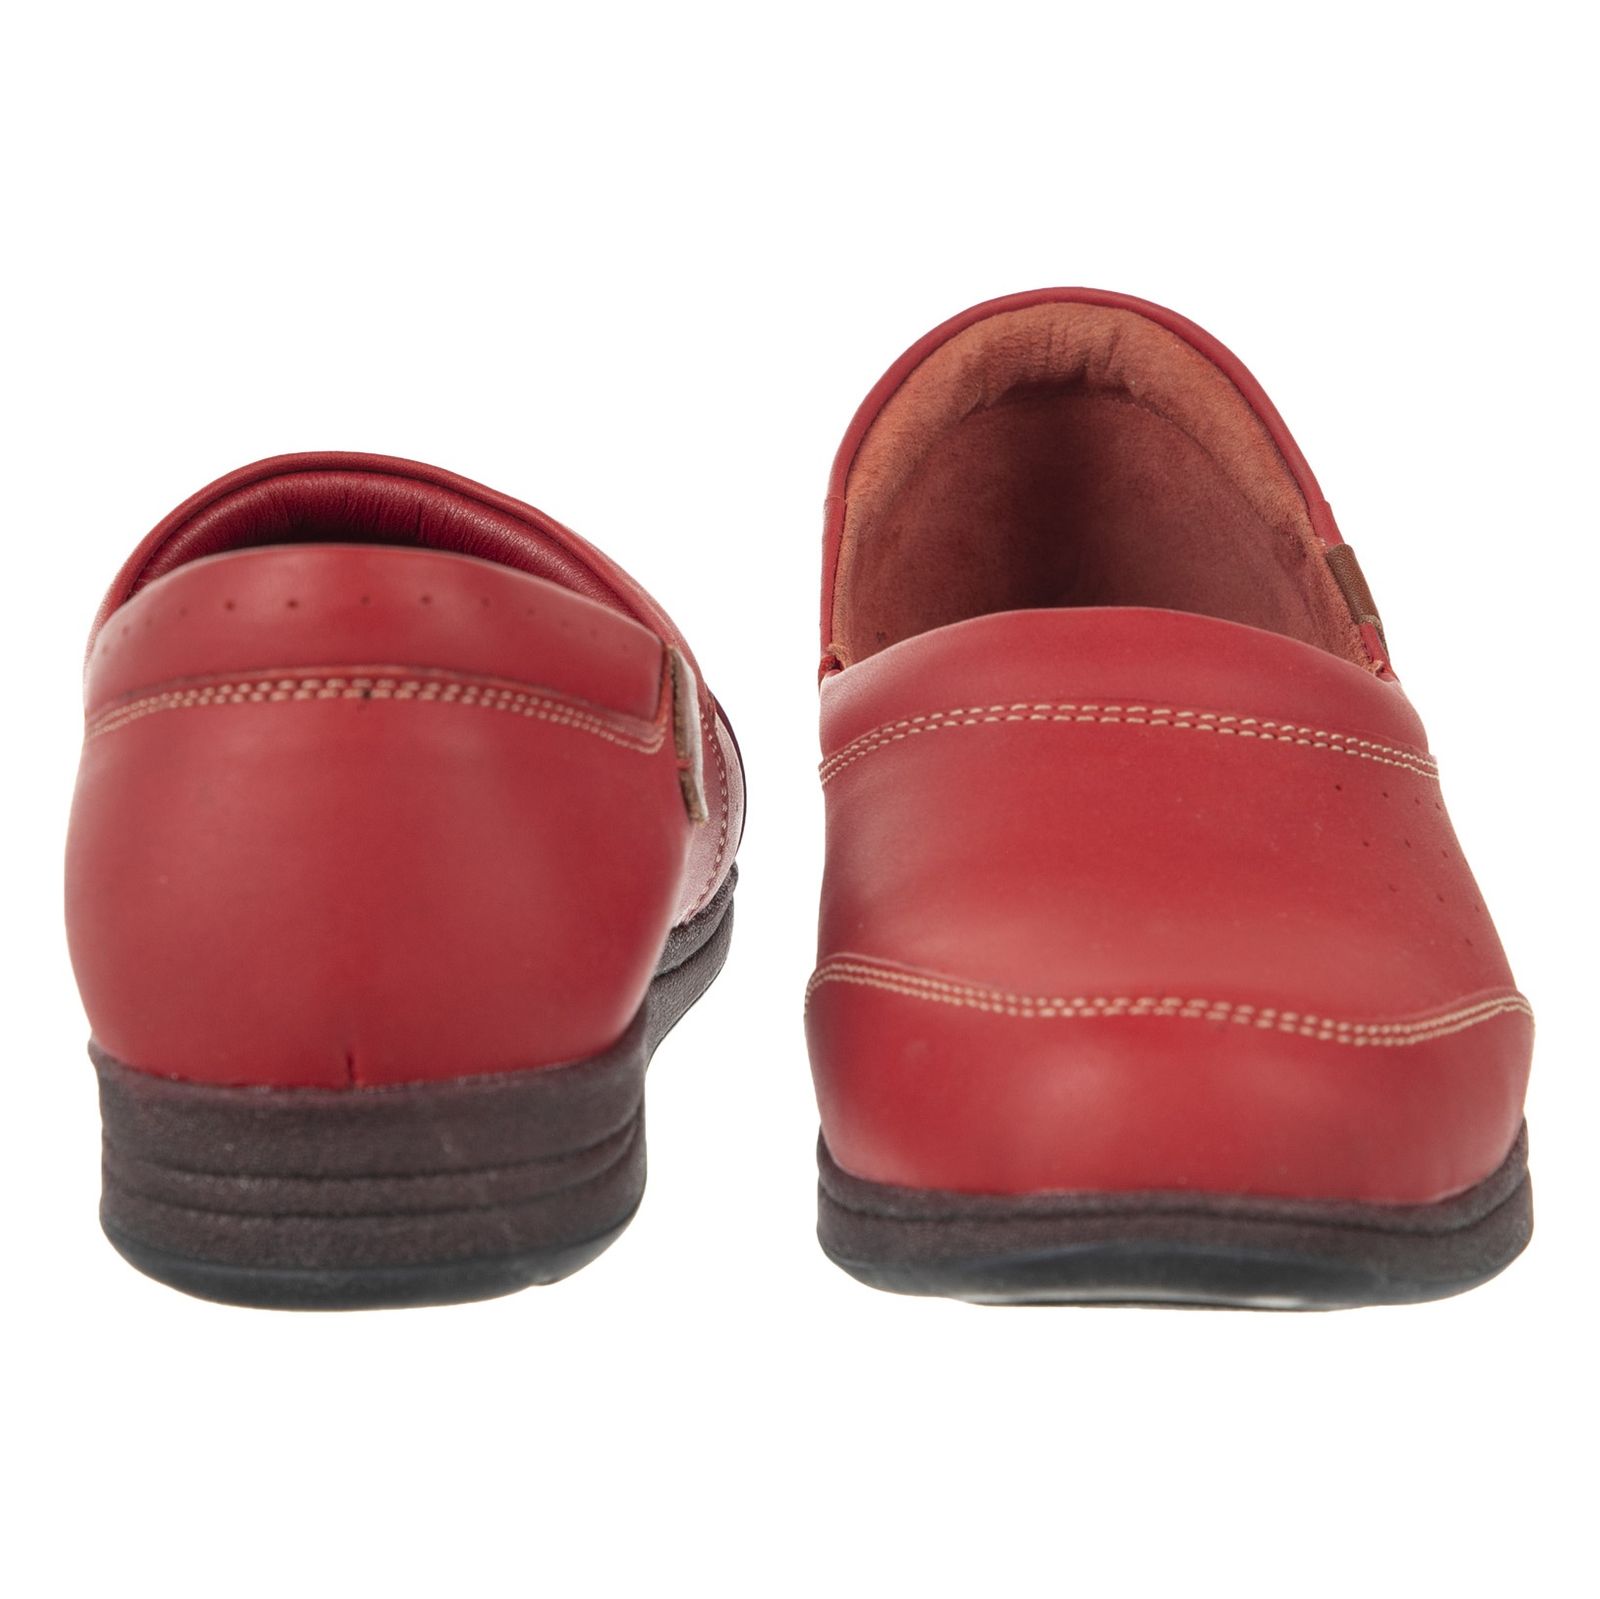 کفش روزمره زنانه ریمکس مدل 5181B500-102 - قرمز - 7